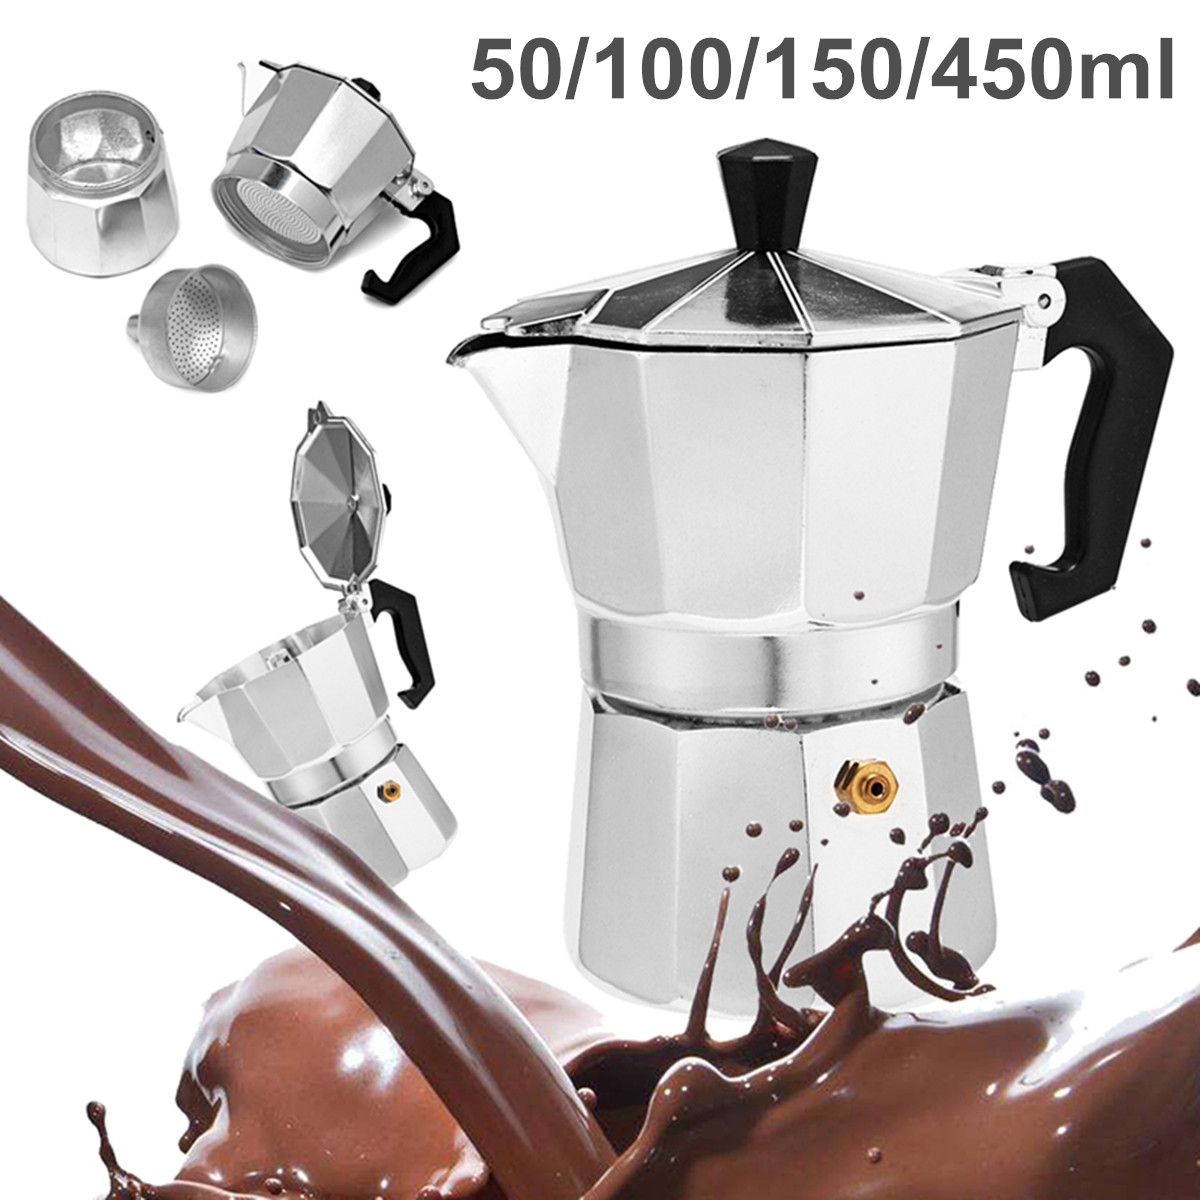 50 / 100 / 150 / 450ml Silver Aluminum Octagonal Mocha Coffee Pot Cup Percolator Maker Tea Pot 41